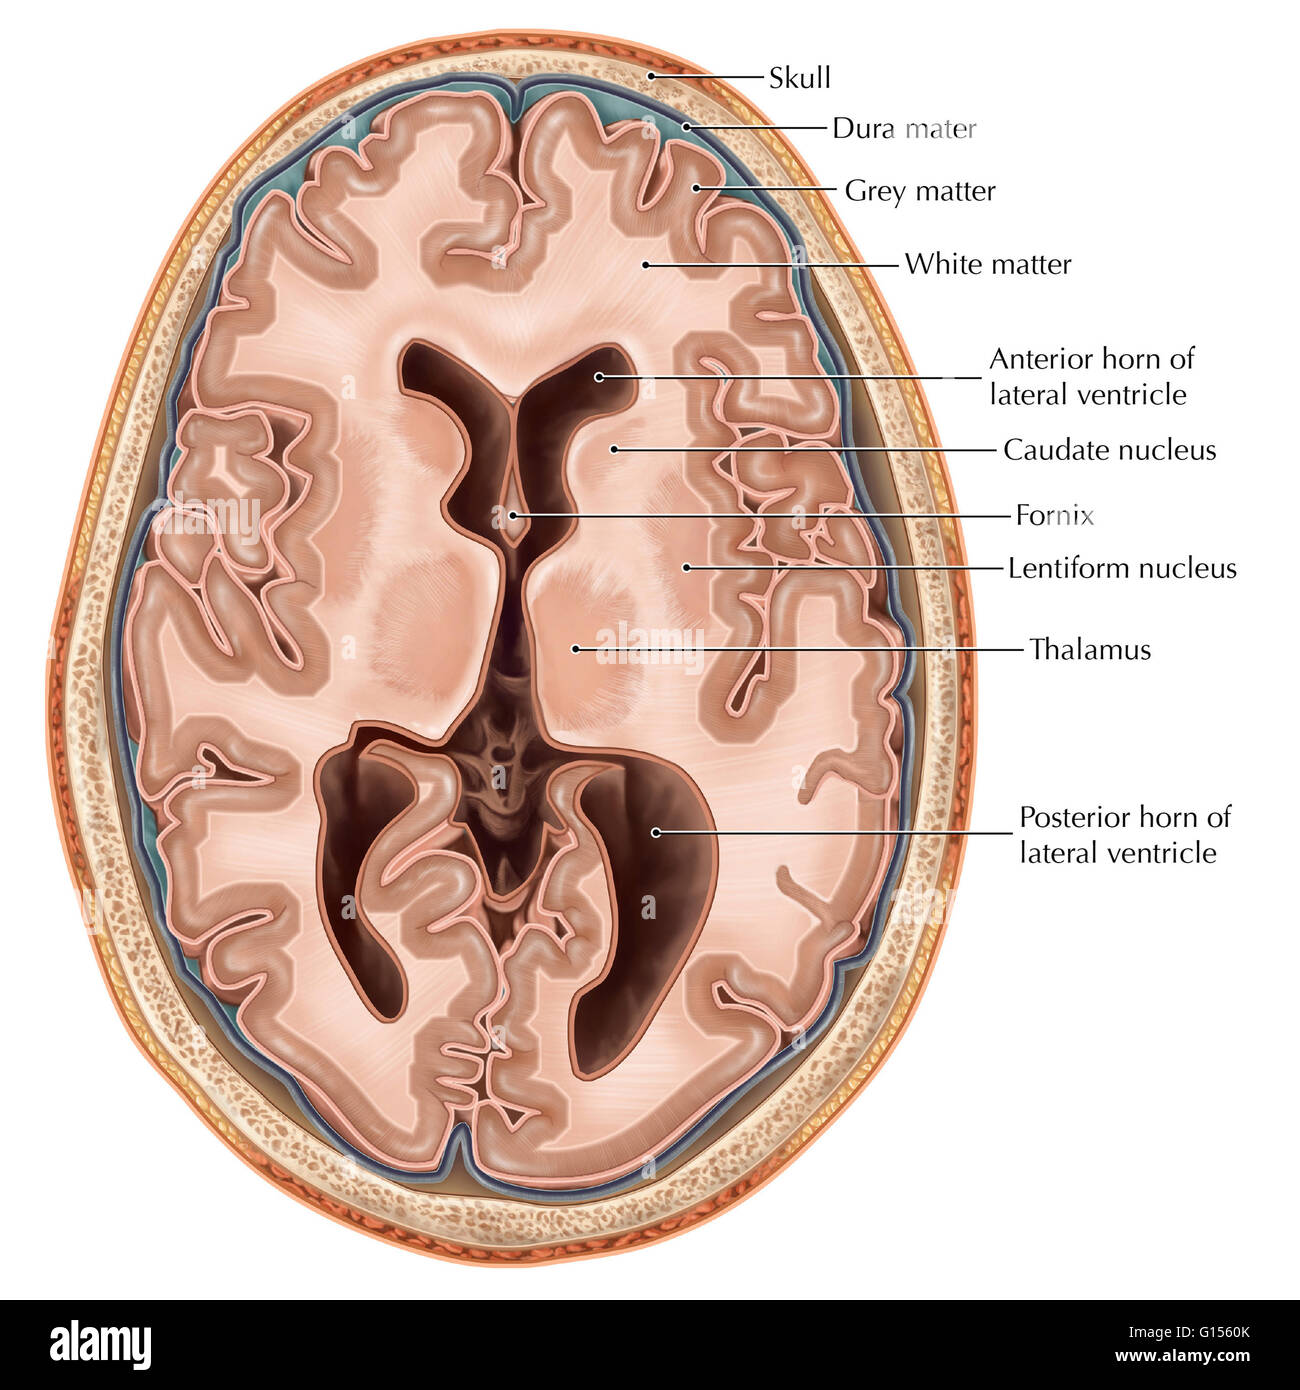 Eine illustrierte quer Ansicht des Gehirns. Dargestellt sind die seitlichen Ventrikel, Hohlräume, die mit Liquor gefüllt sind, die nähren und unterstützen das Gehirn und das Rückenmark. Das Telencephalon gliedert sich in zerebralen Hemisphären Witz Stockfoto